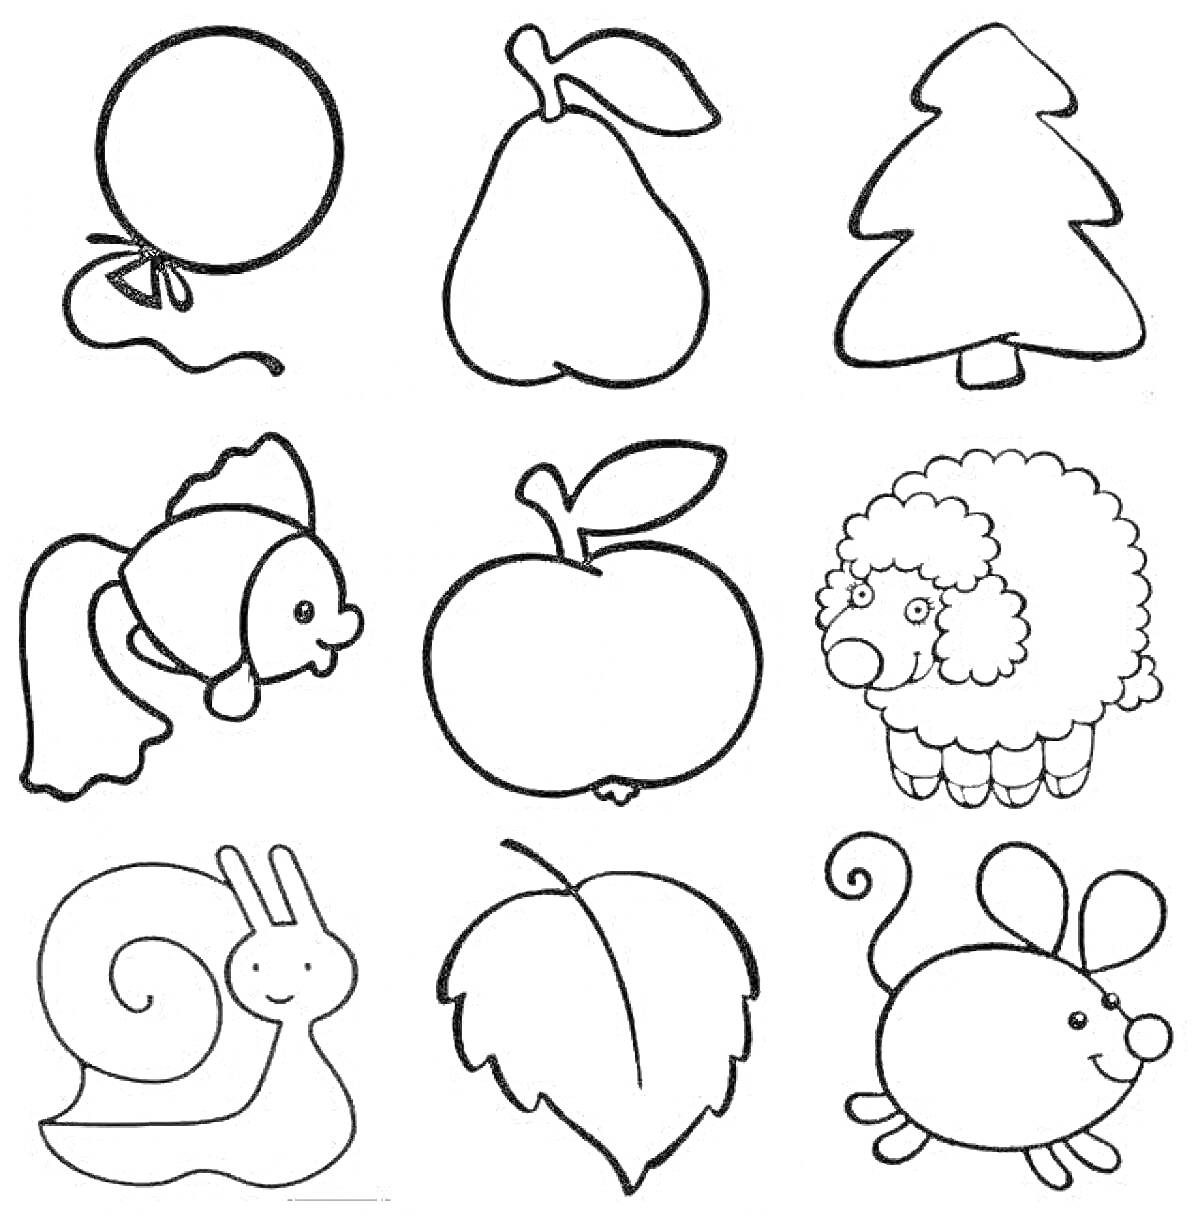 Раскраска Воздушный шарик, груша, ёлка, рыбка, яблоко, овечка, улитка, листок, мышка